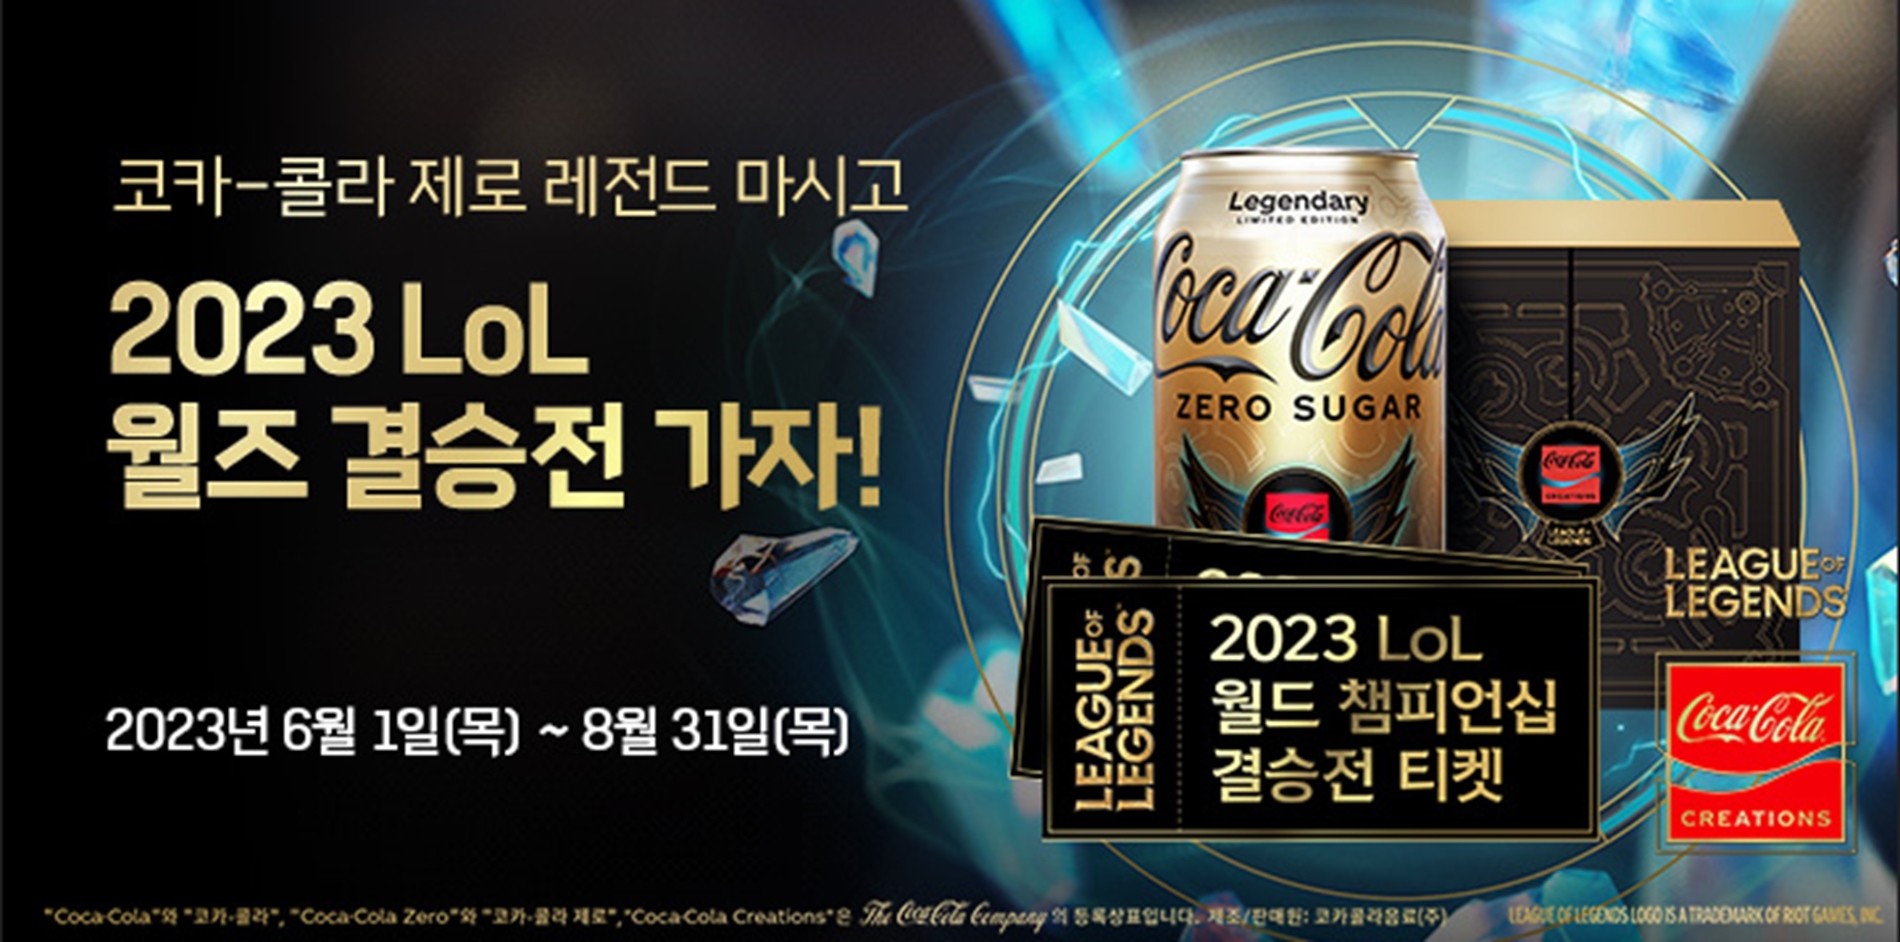 [생활경제 이슈] 코카-콜라 크리에이션, 2023 LoL 월드 챔피언십 티켓 획득 프로모션 진행 外